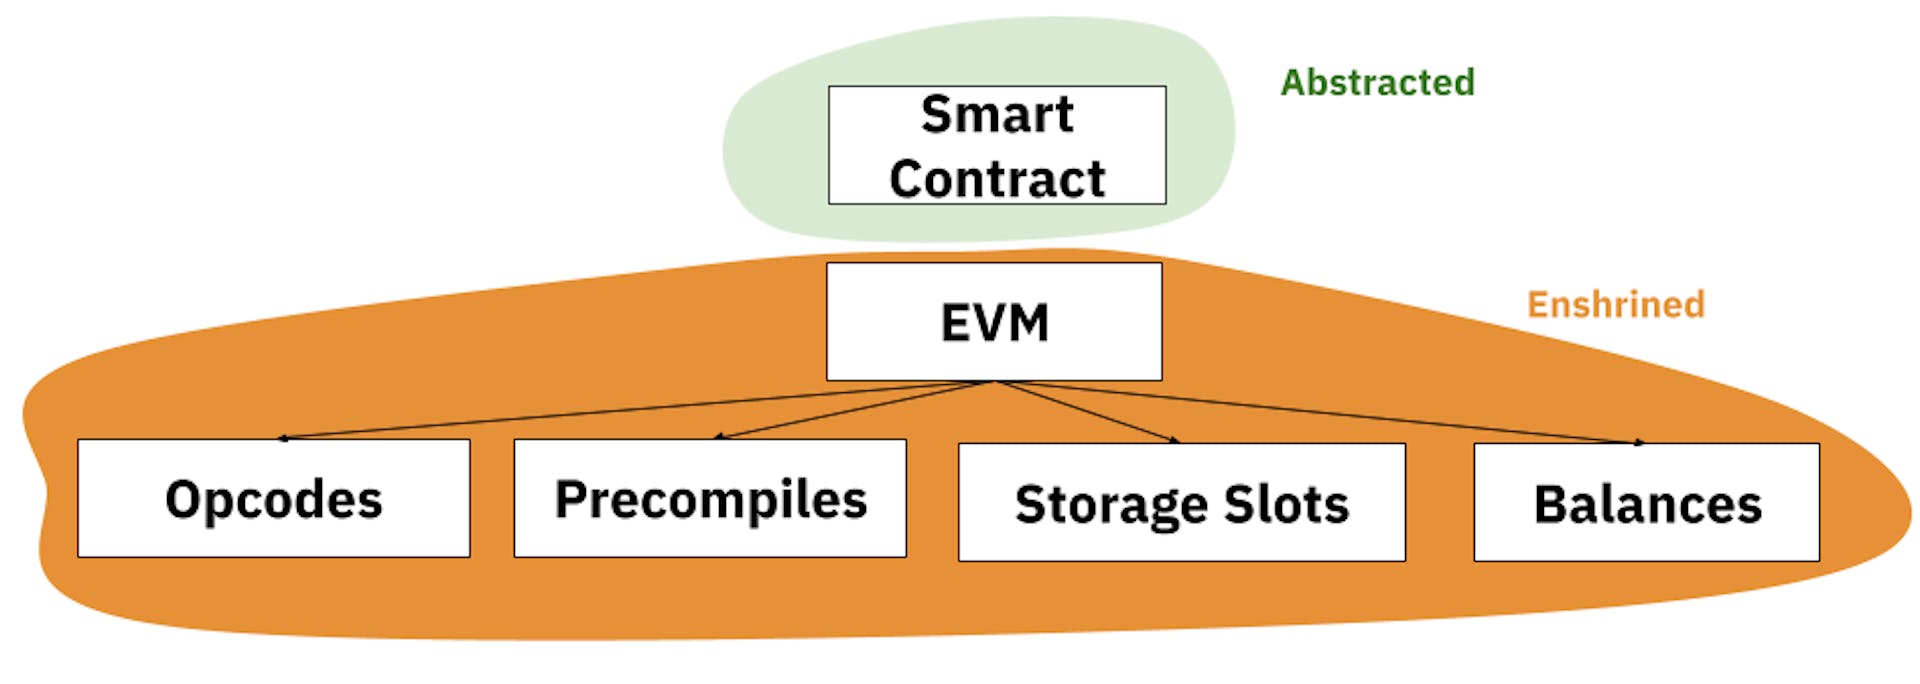 EVM 모델의 내재화